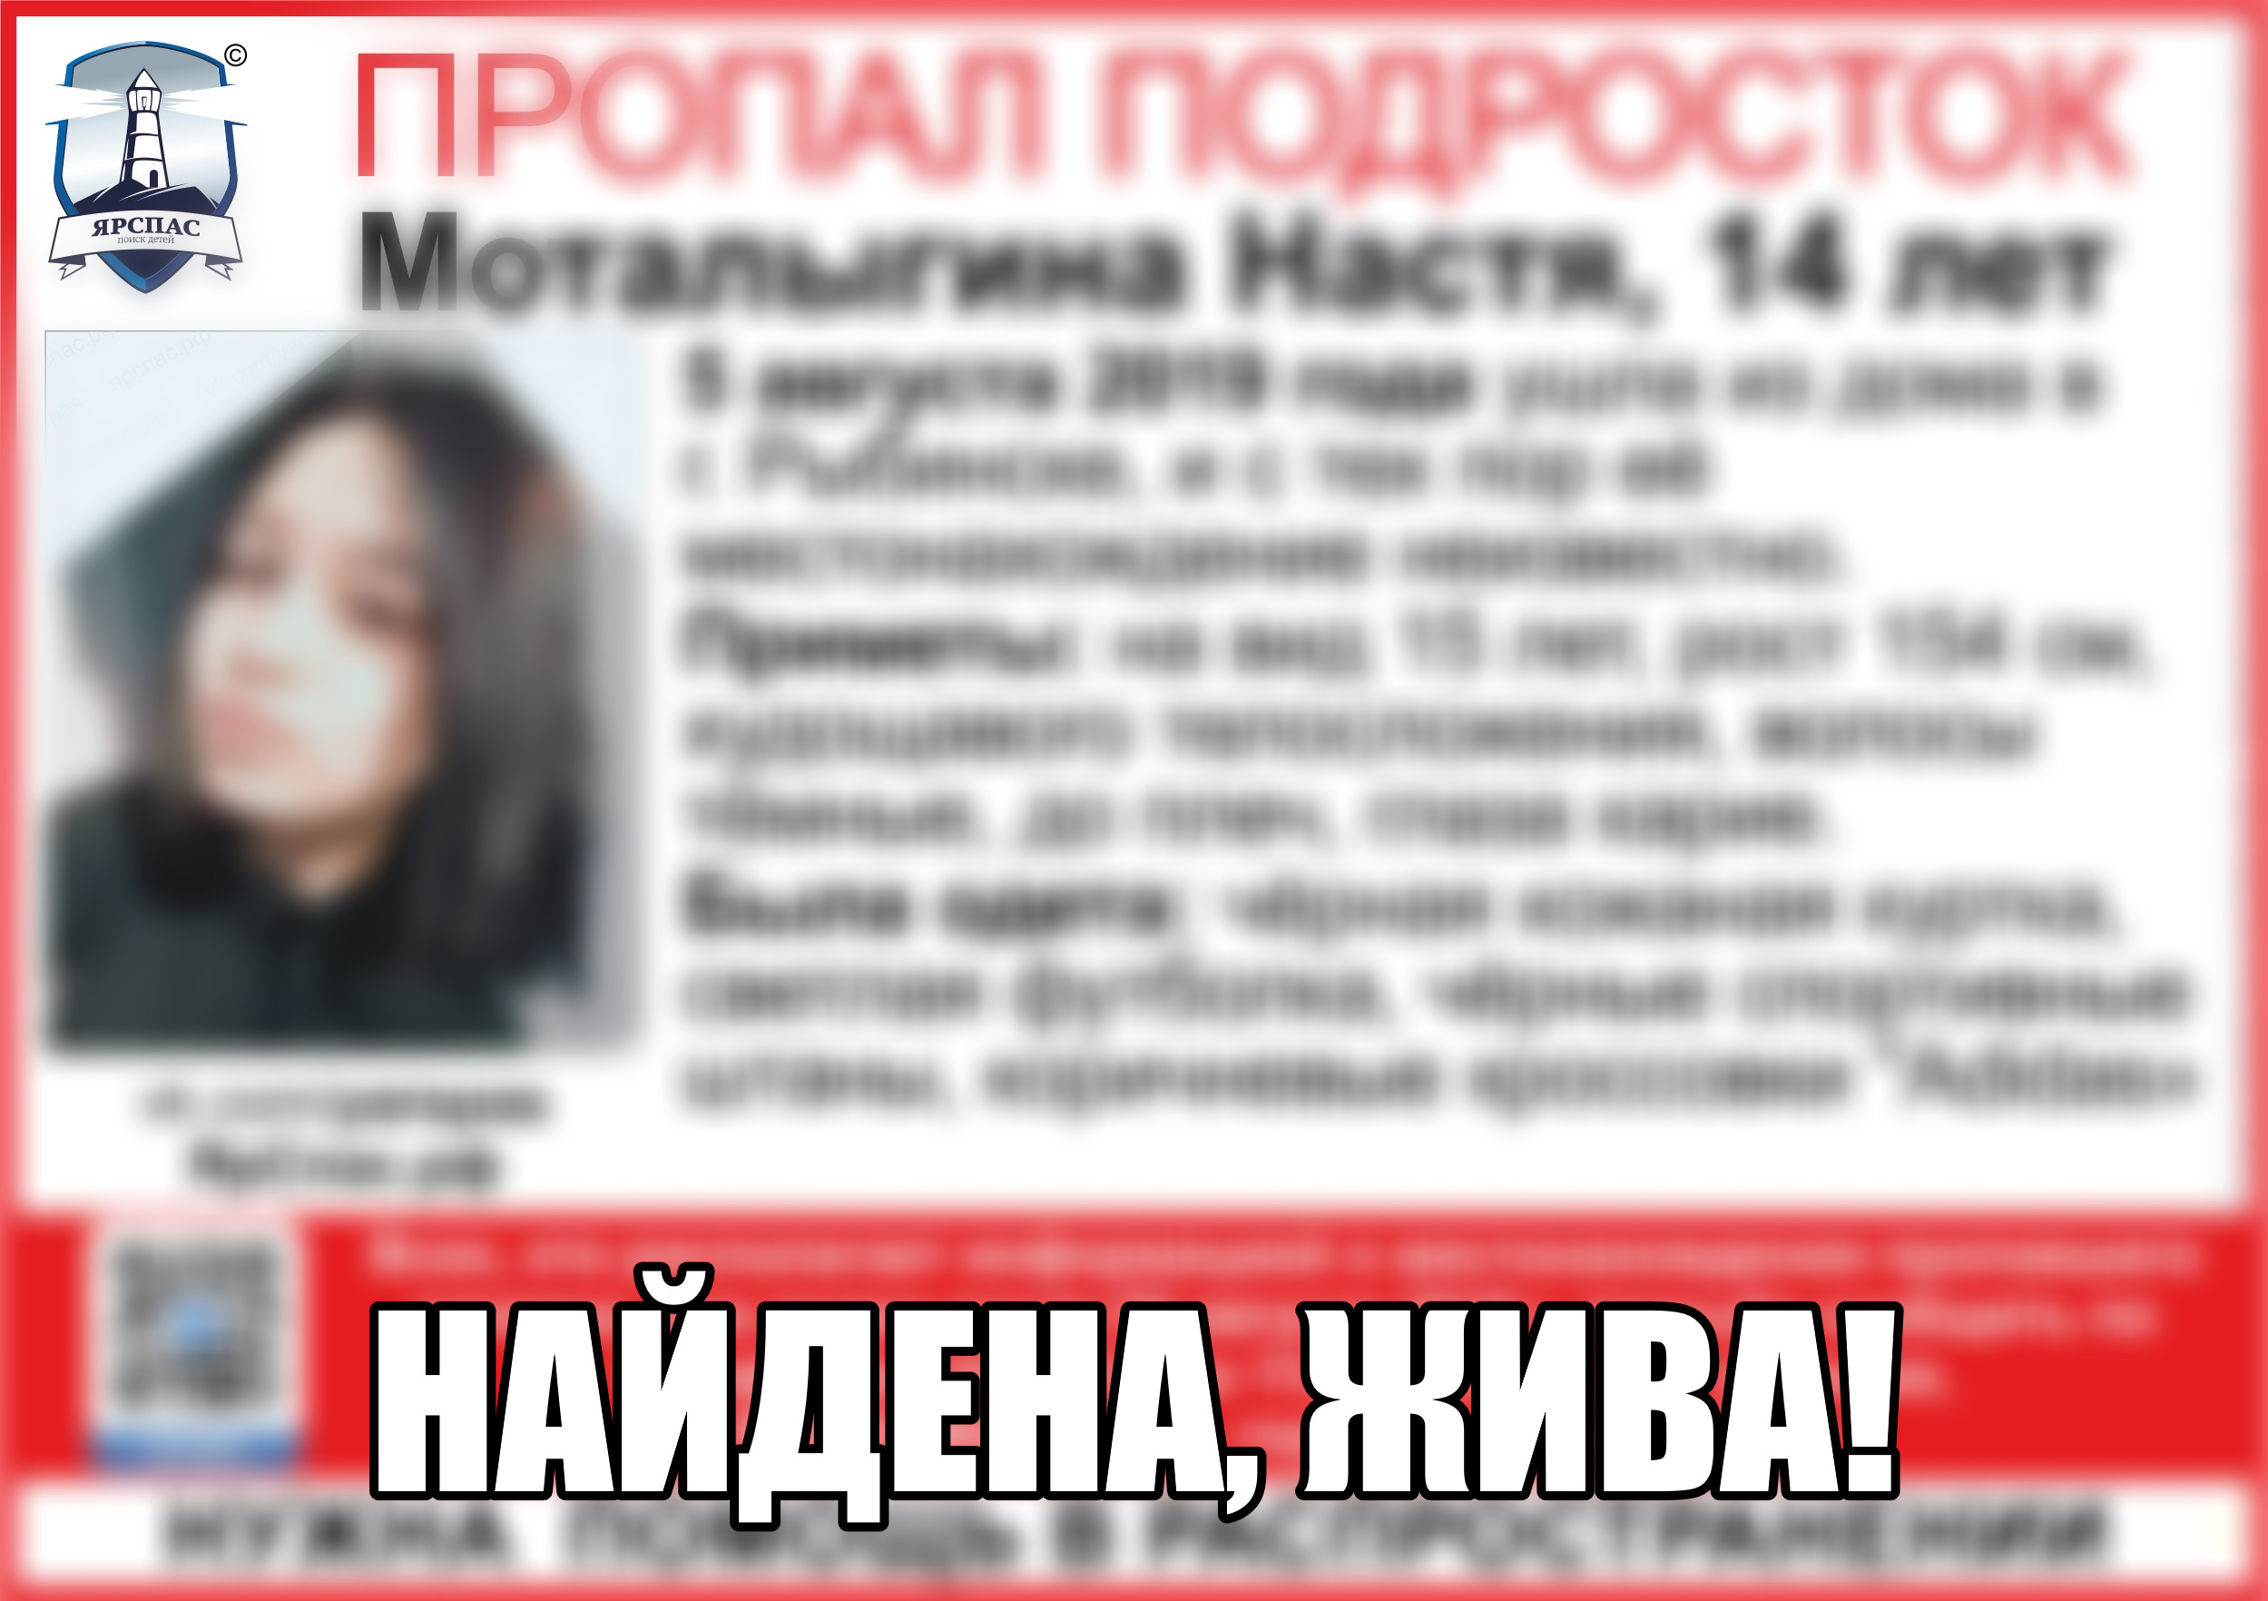 В Рыбинске нашли пропавшую 14-летнюю девушку